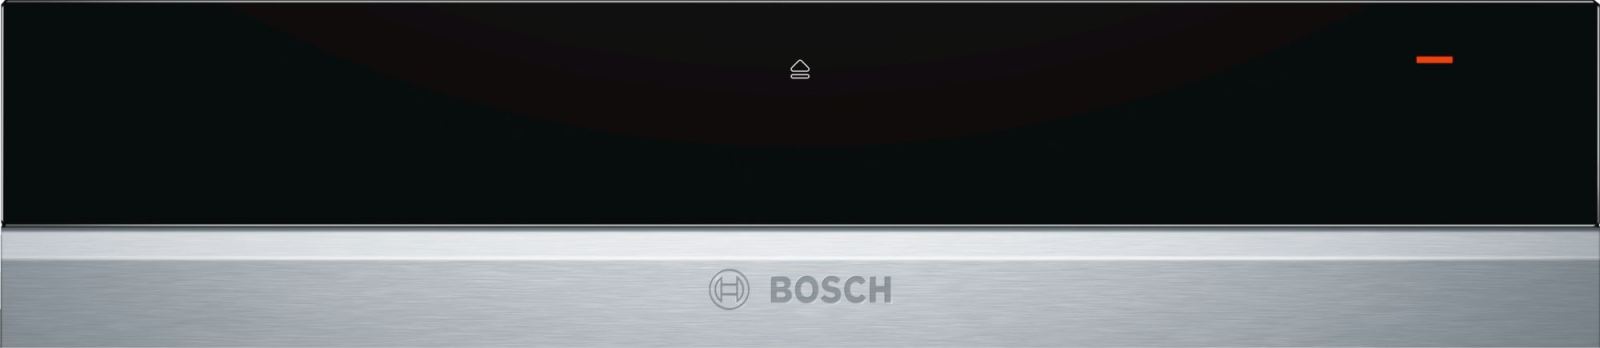 Khay Giữ Ấm Bosch BIC630NS1, Bosch BIC630NS1 Làm Nóng Nhanh, Lâu Dài